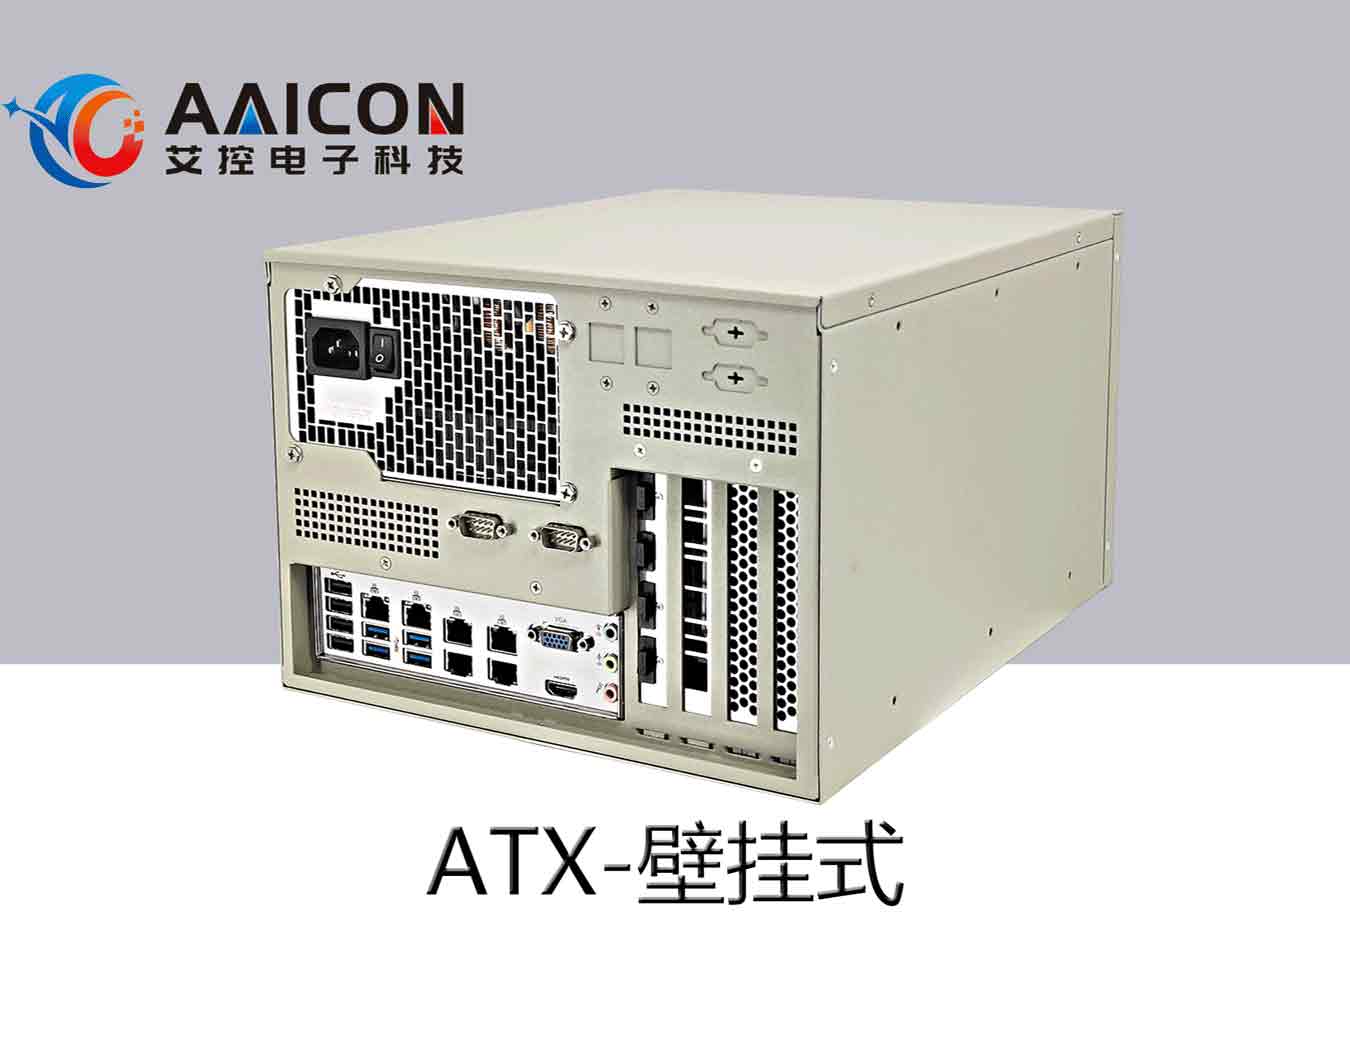 ARC-1500-MTX工控机